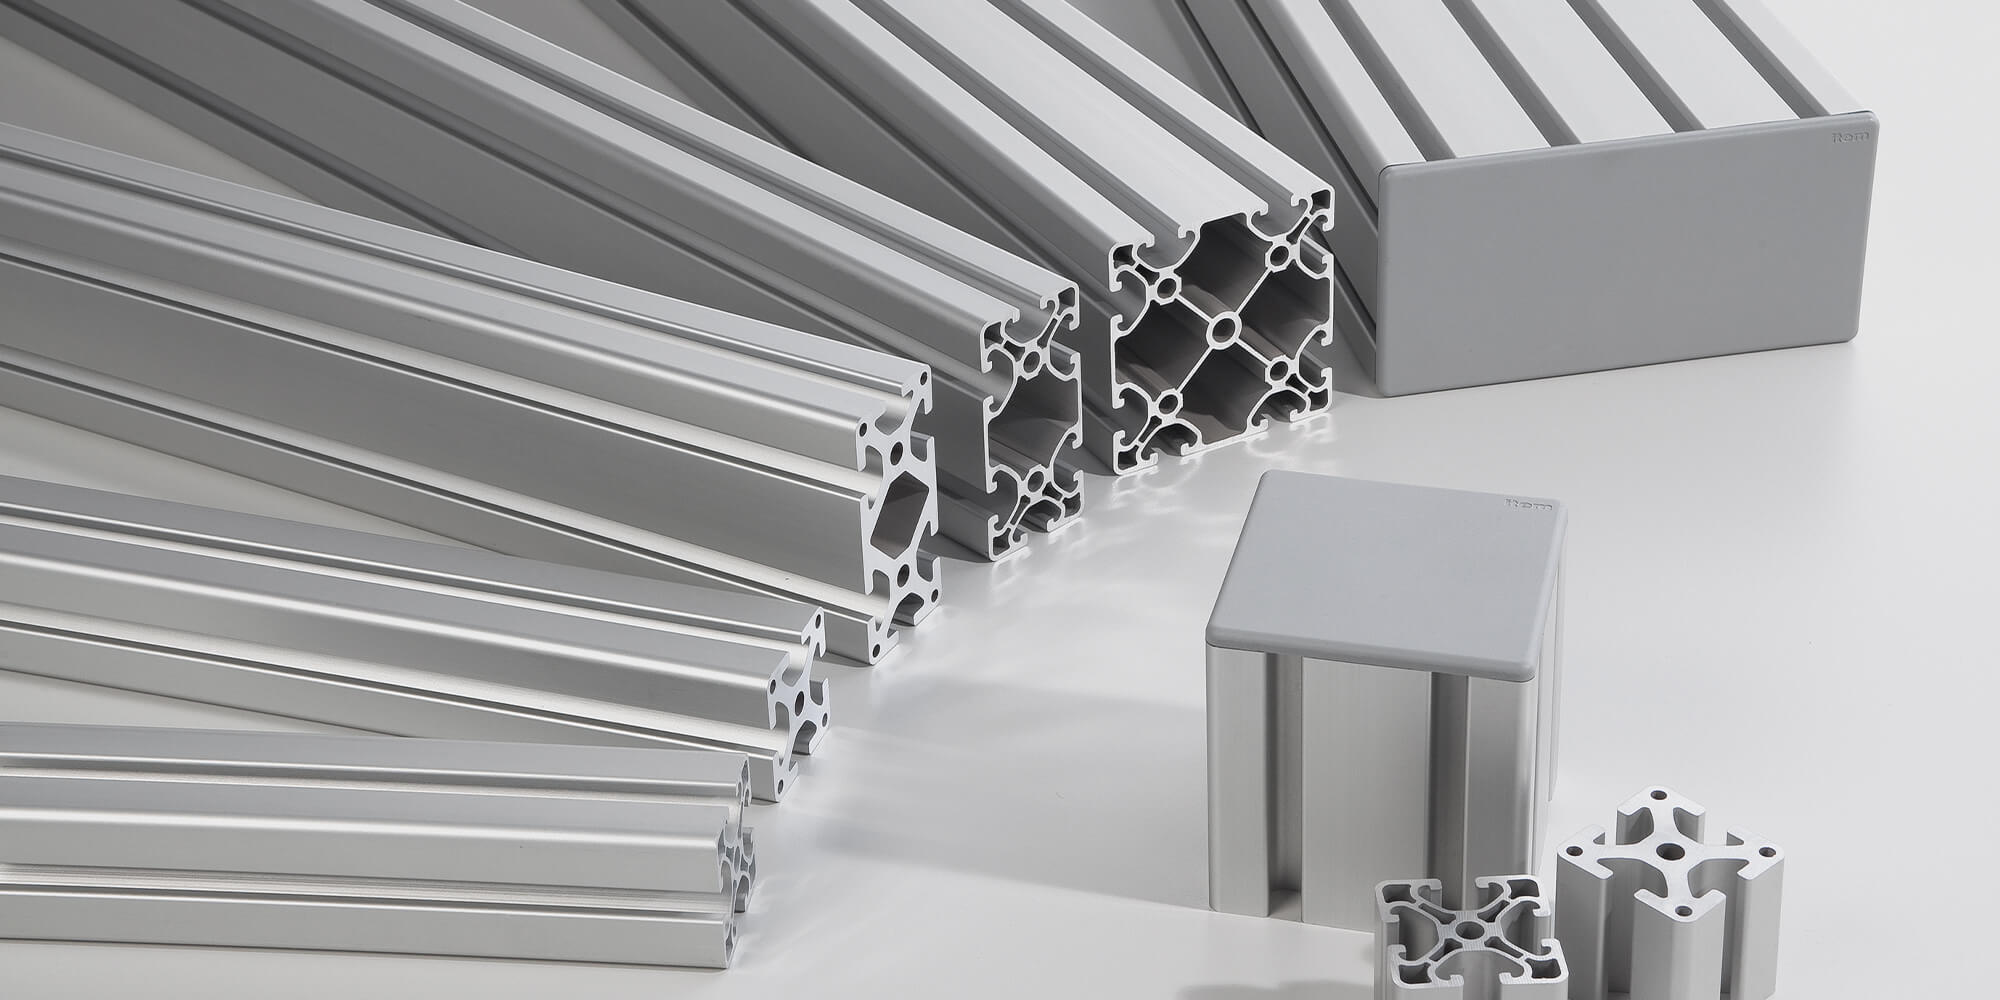 Profile aluminiowe item: Twoje pomysły staną się rzeczywistością